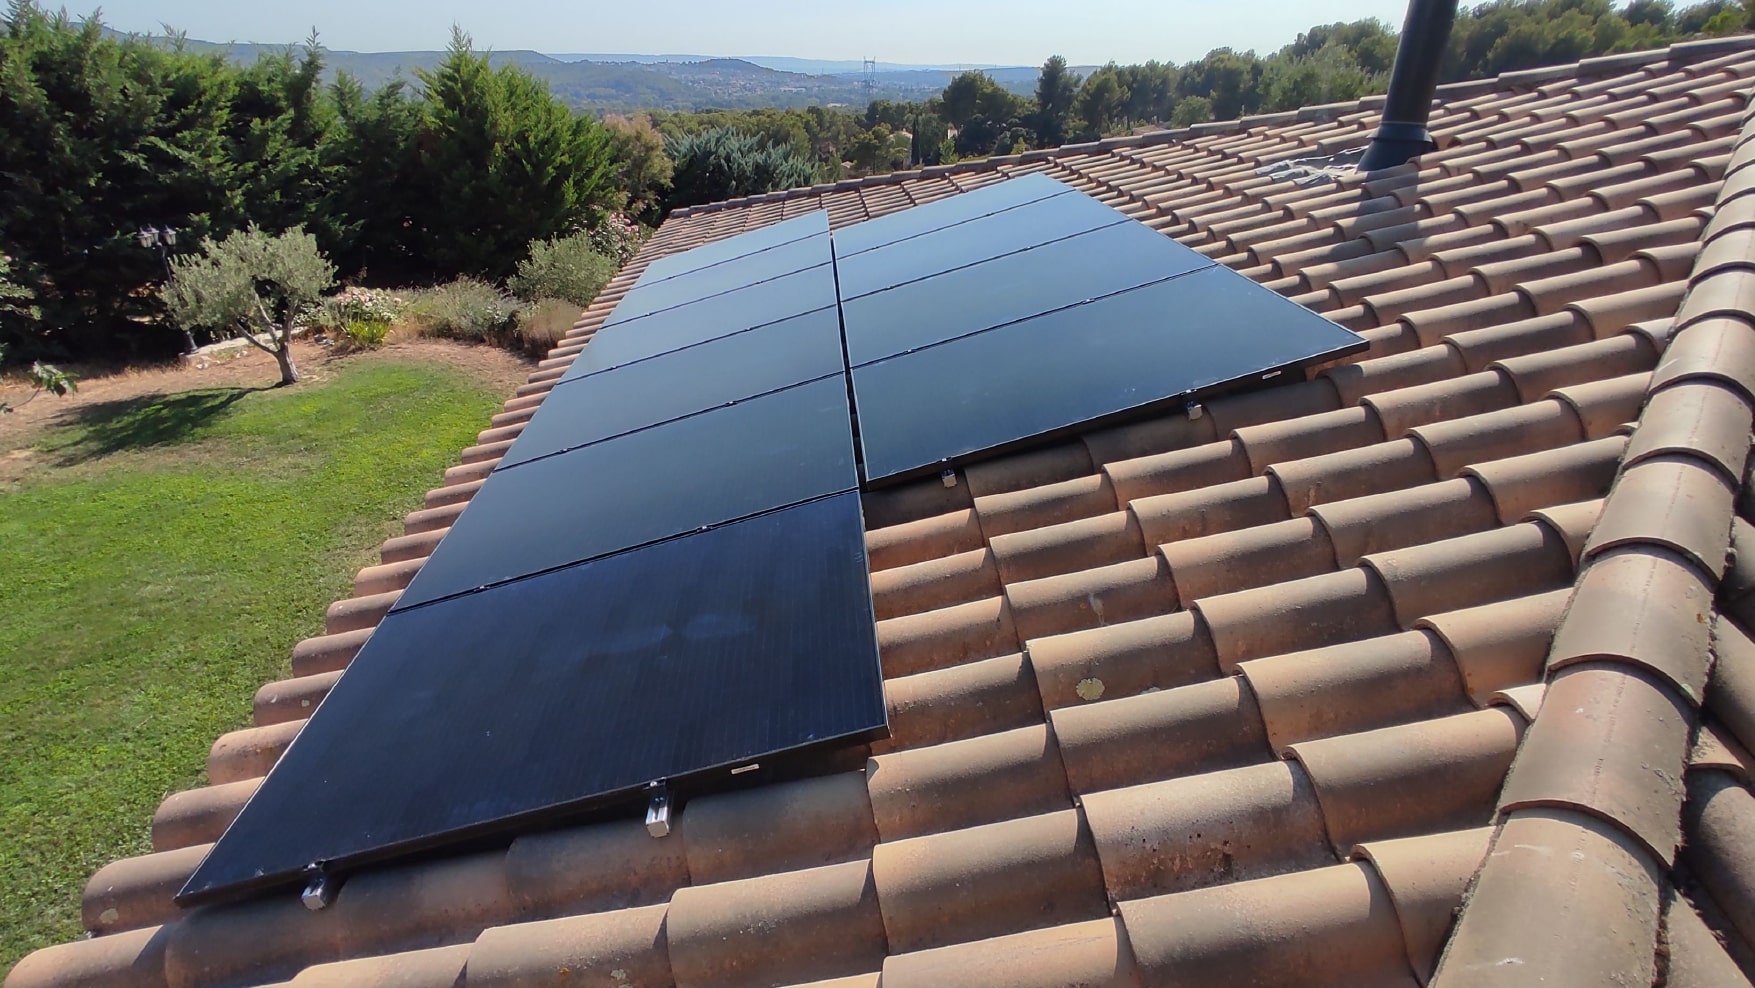 <span class="popup-mms-11">Installations de panneaux solaires sur toiture inclinée - 6560W</span>